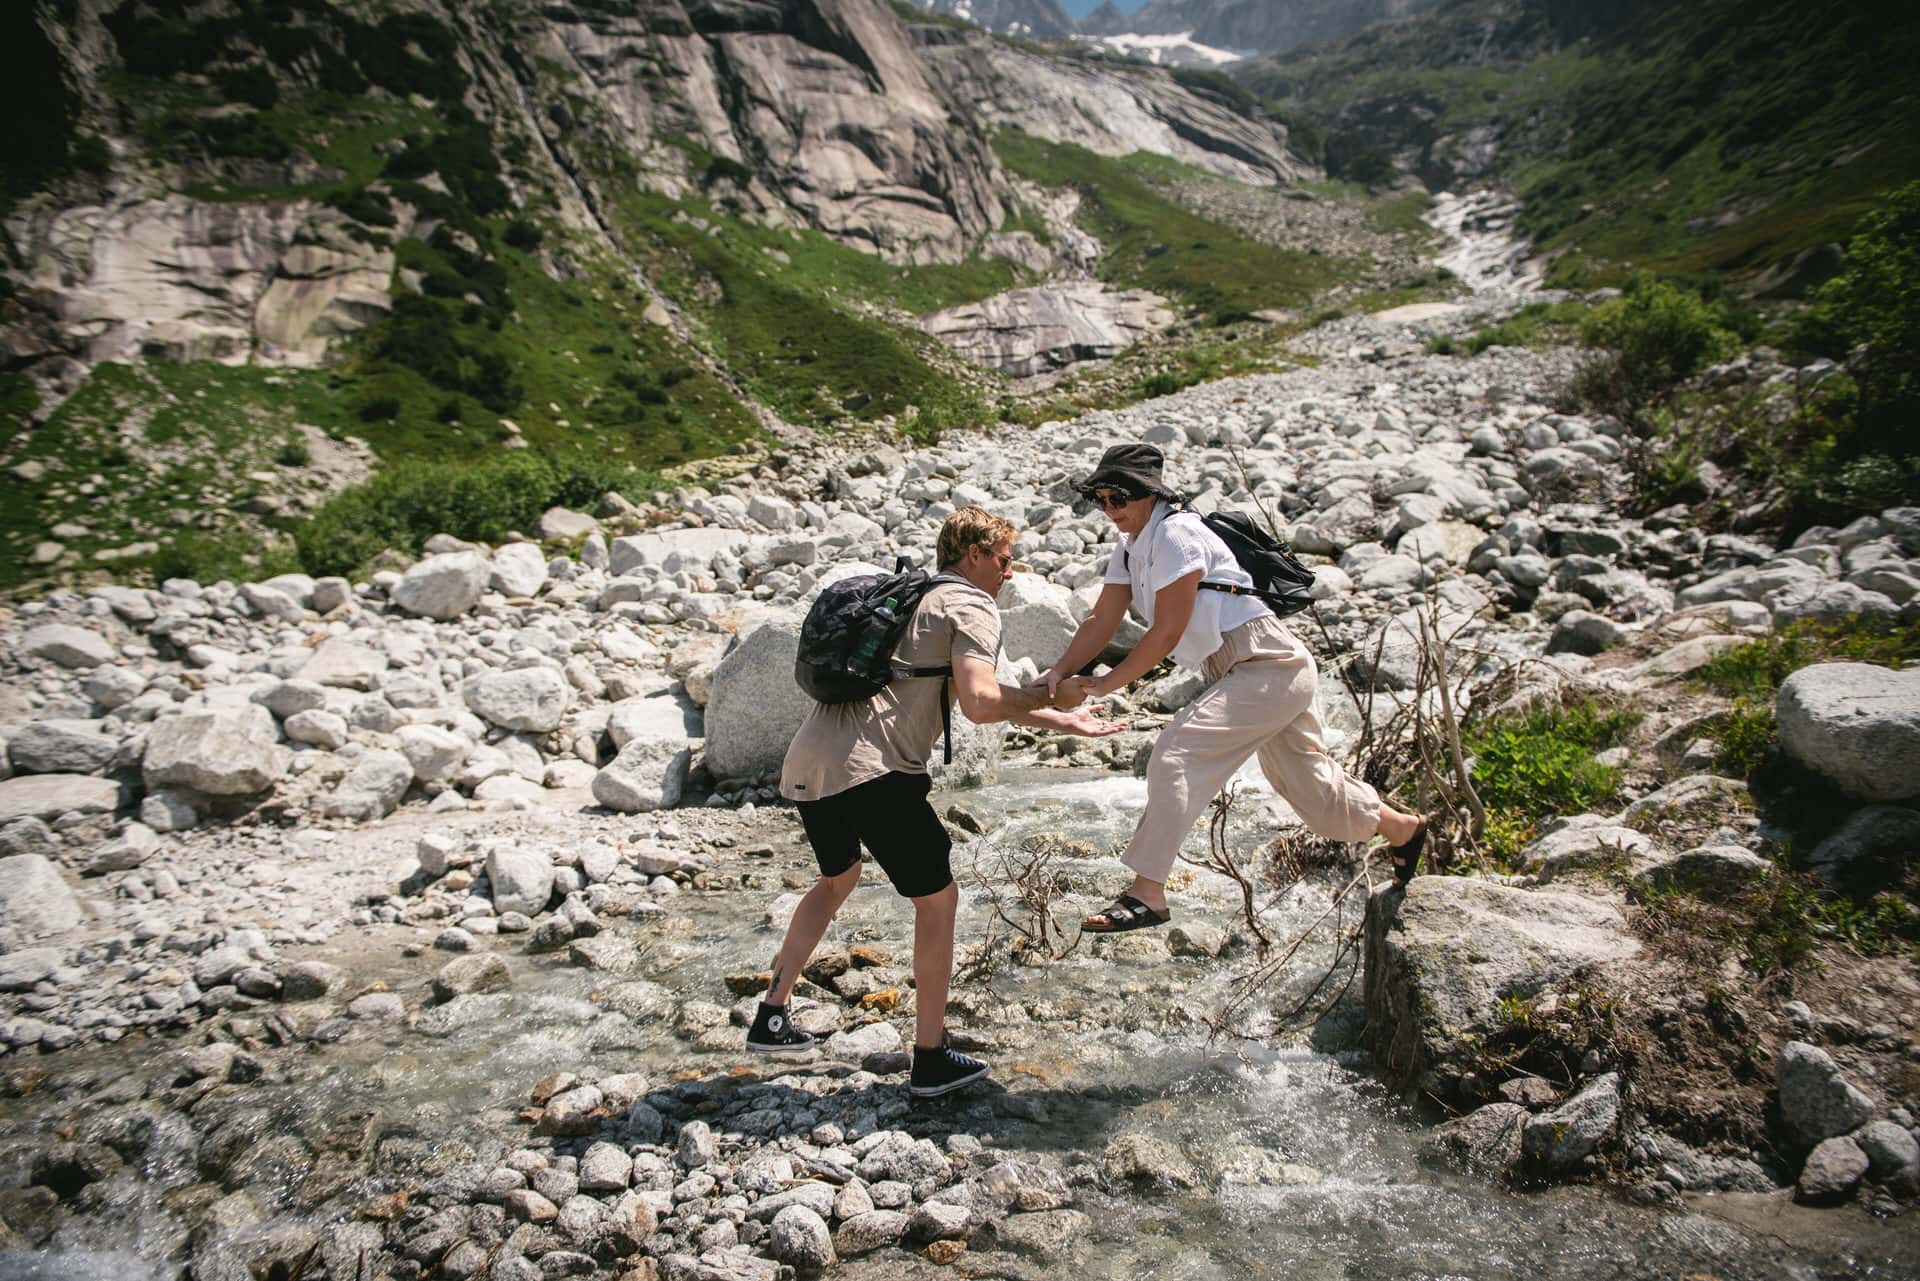 Trails of love, alpine wonder - hiking elopement in Switzerland.